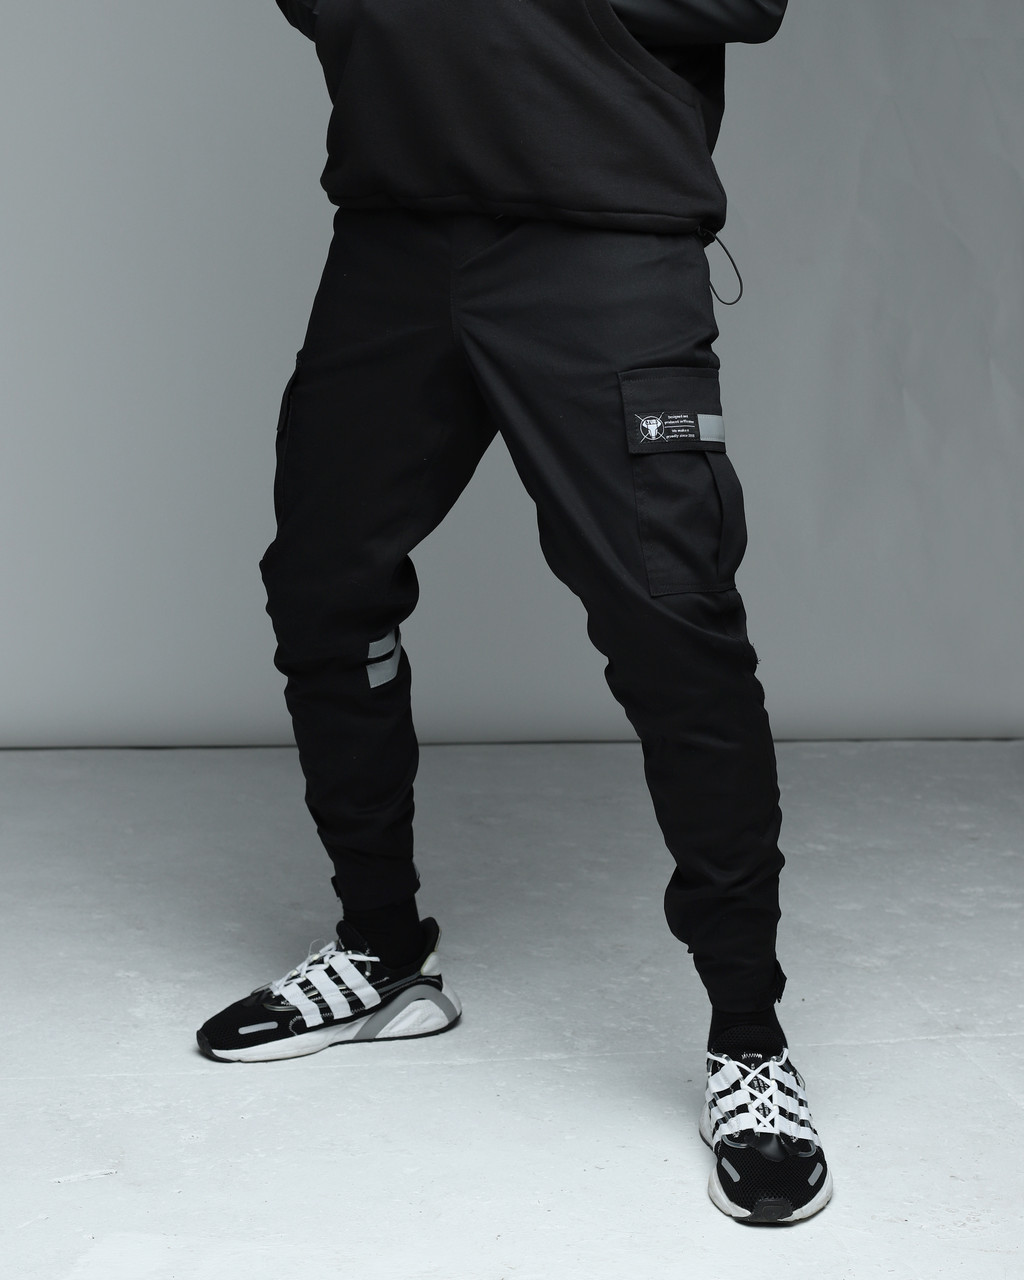 

Зимние штаны карго на флисе мужские черные бренд ТУР модель Райот (Raiot) размер: S, M, L, XL, XXL